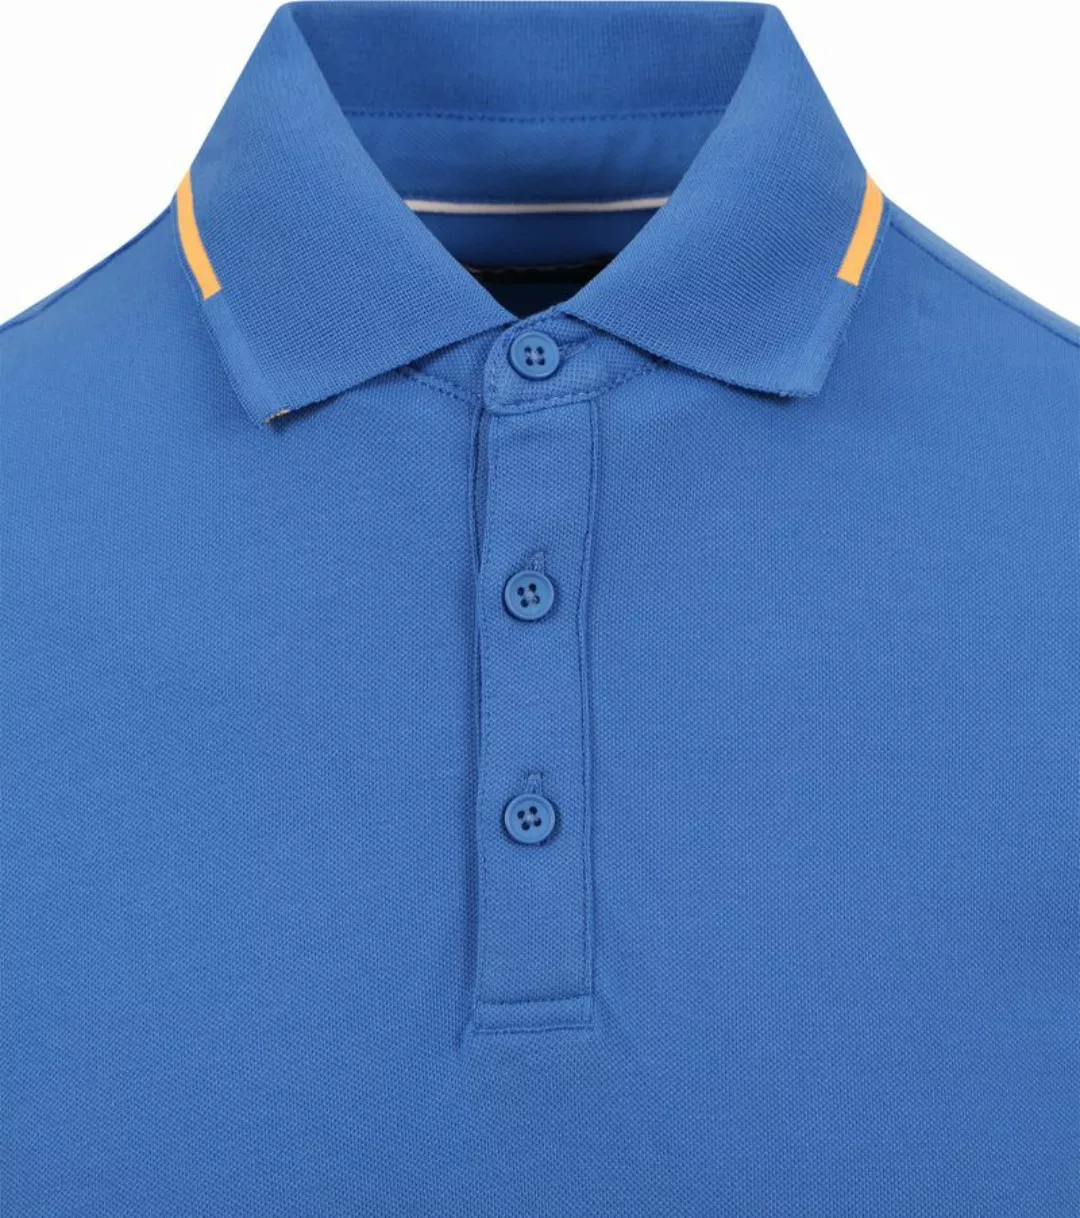 Suitable Fluo B Poloshirt Blau - Größe M günstig online kaufen